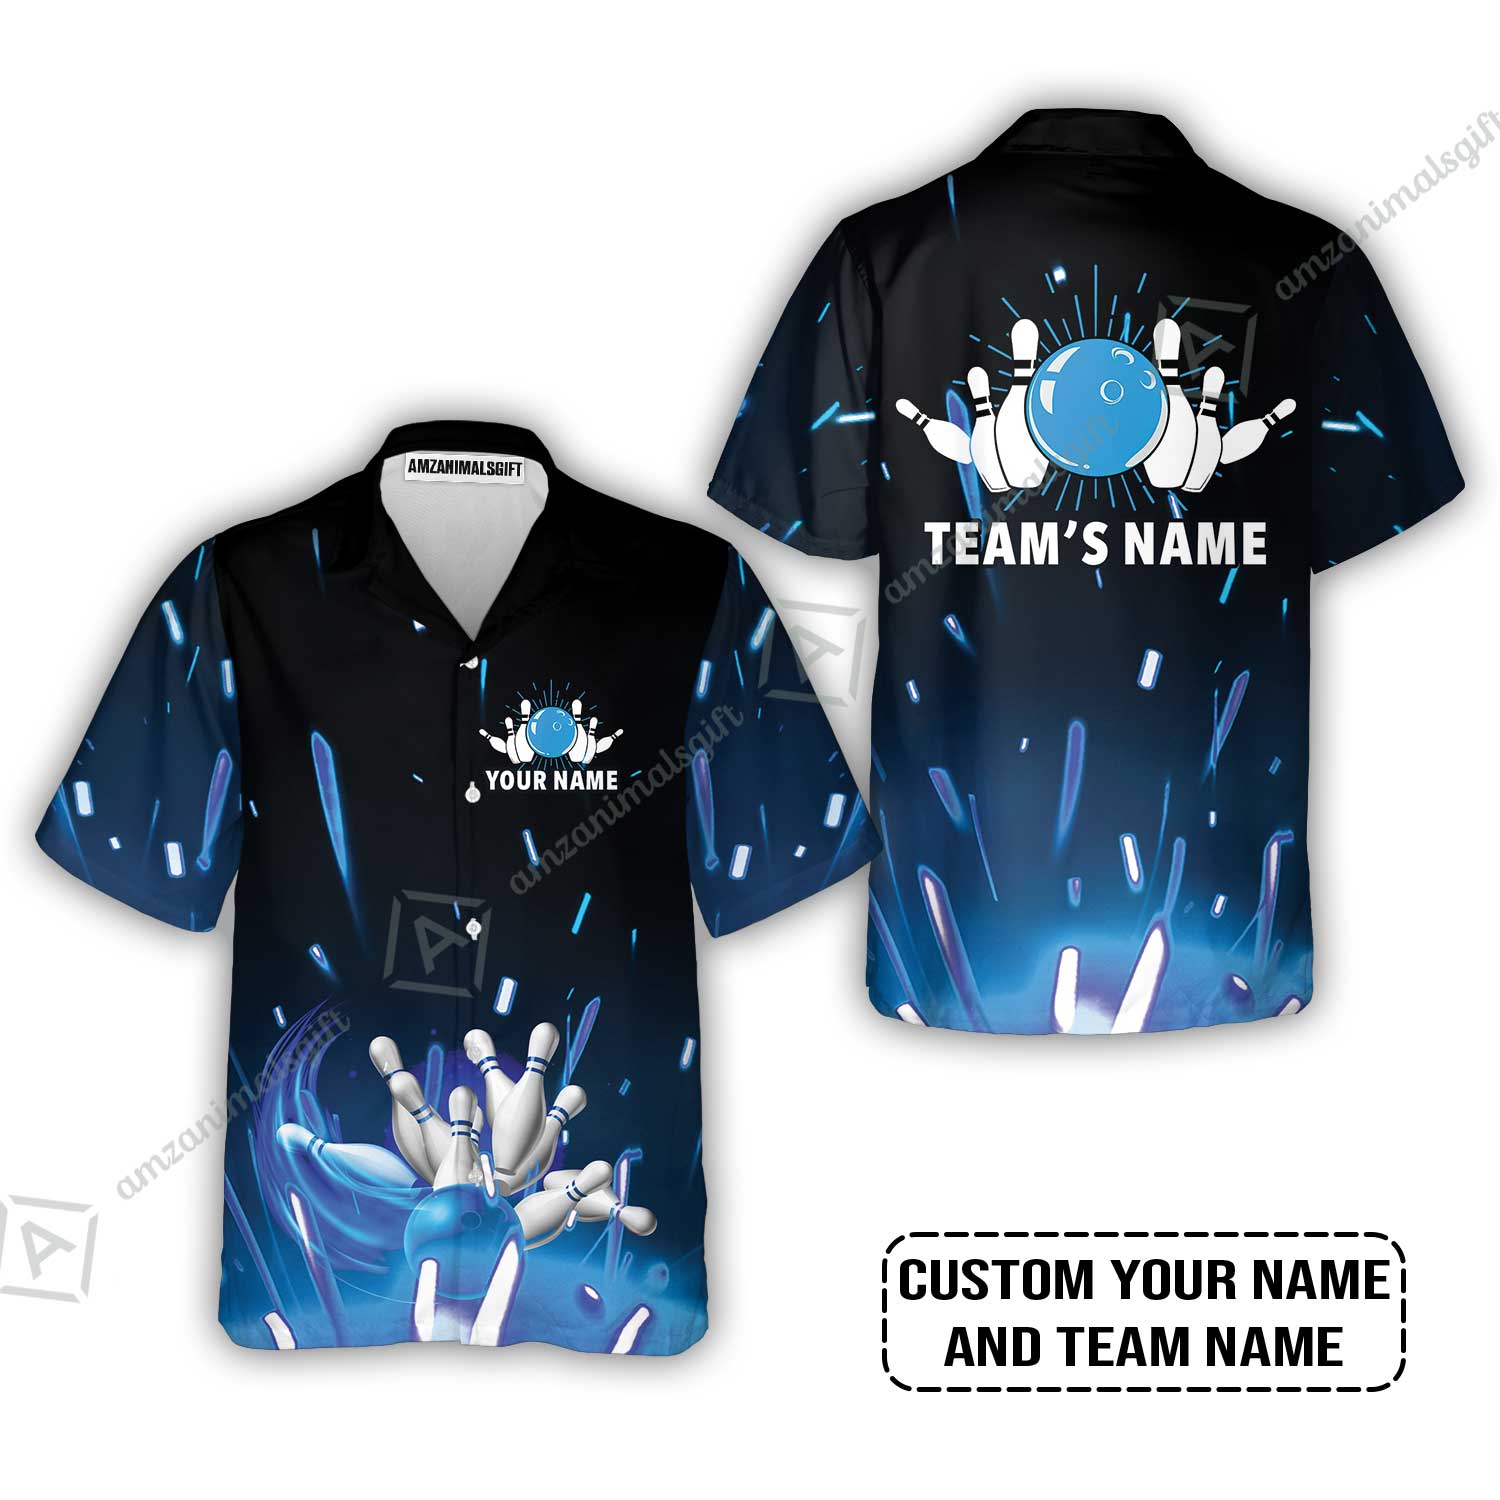 Bowling Custom Name Hawaiian Shirt - Blue Bowling Personalized Hawaiian Shirt - Gift For Friend, Family, Bowling Lovers